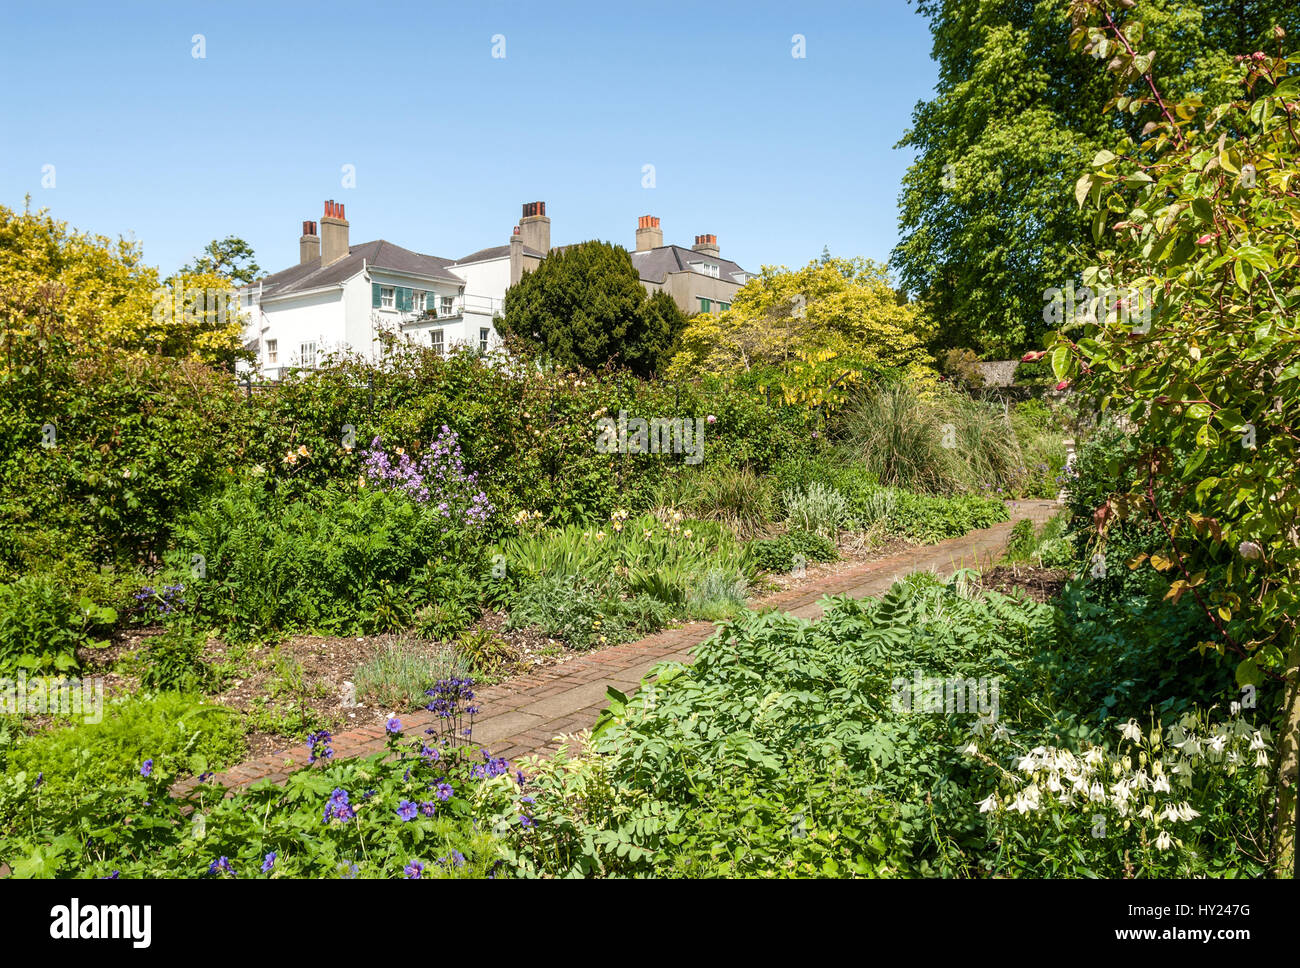 Giardino di Preston Manor, una storica residenza del XVII secolo presso il famoso resort per vacanze Brighton East Sussex, l'Inghilterra del sud. | Garten des reizvollen Foto Stock